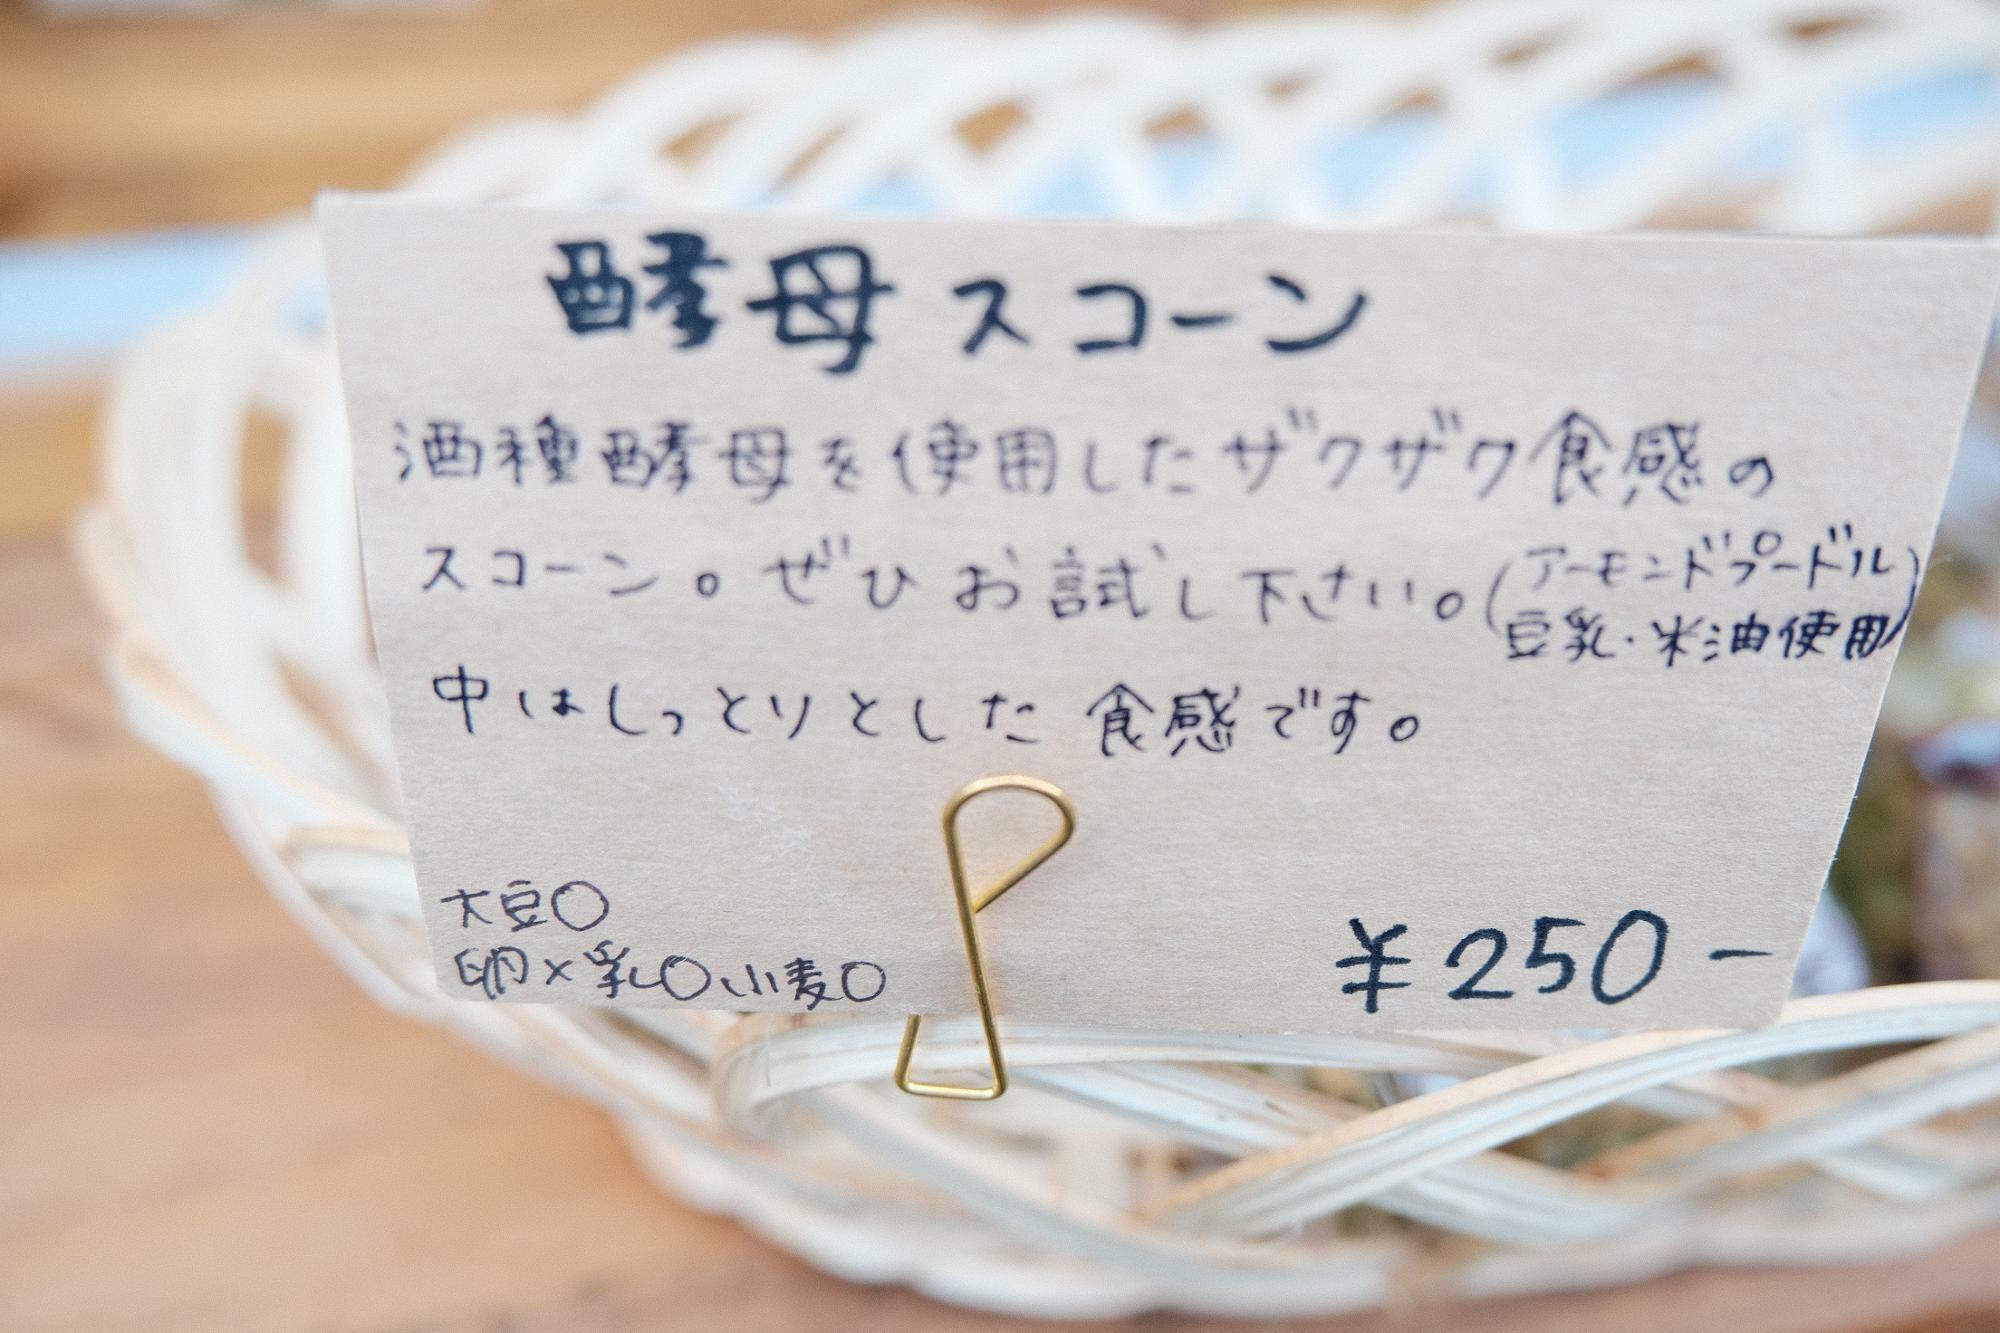 「酵母スコーン」(250円)